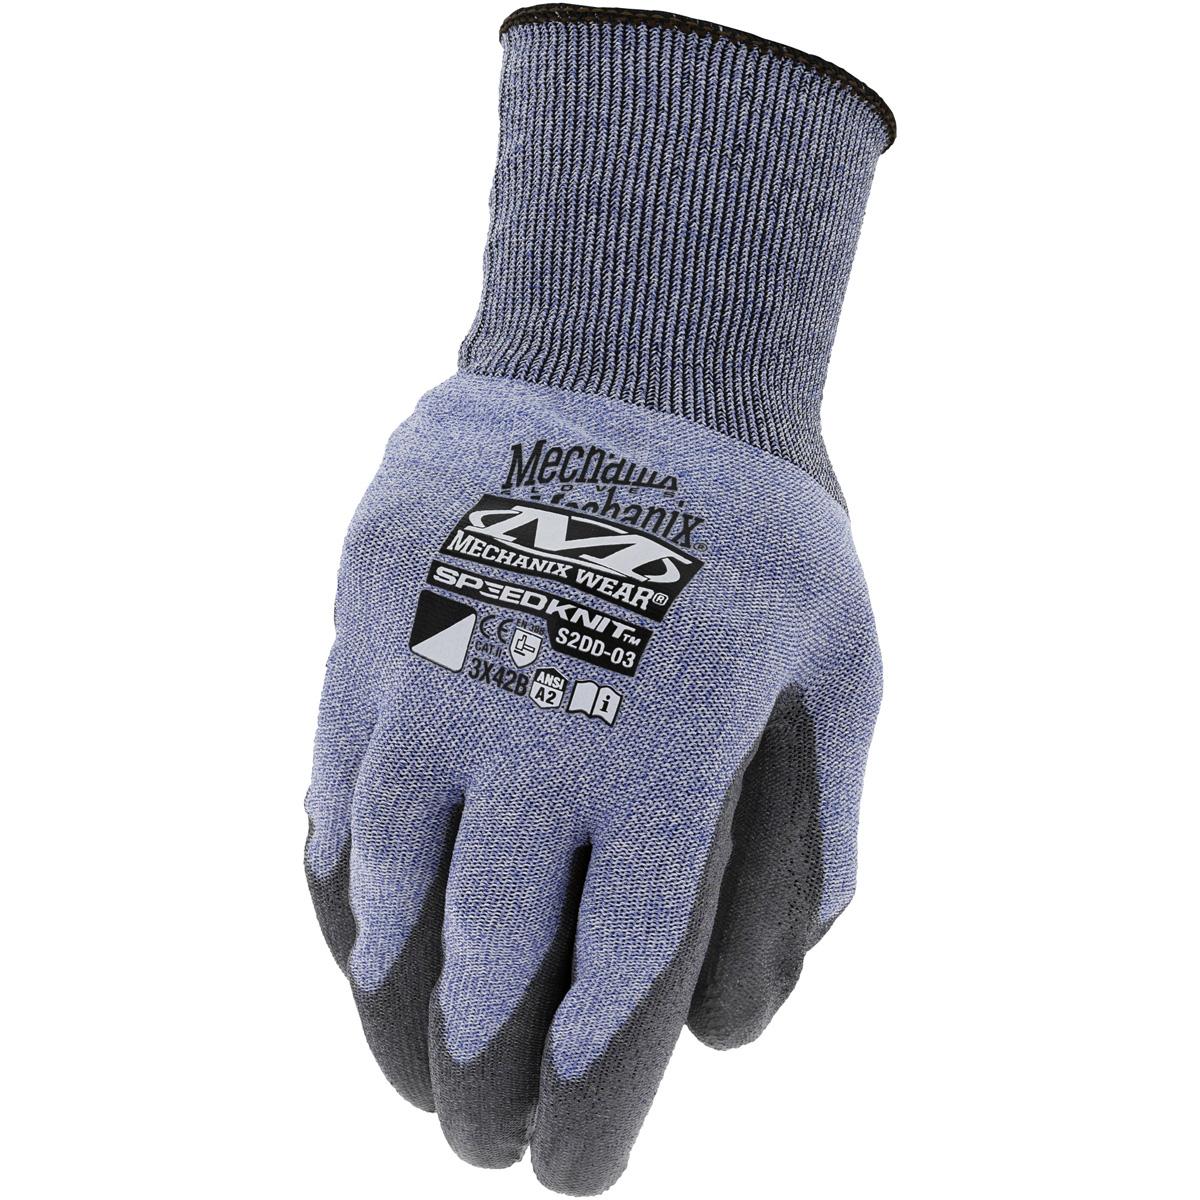 Mechanix Wear SpeedKnit B2 Latex Coated Knit Work Gloves for $6.27